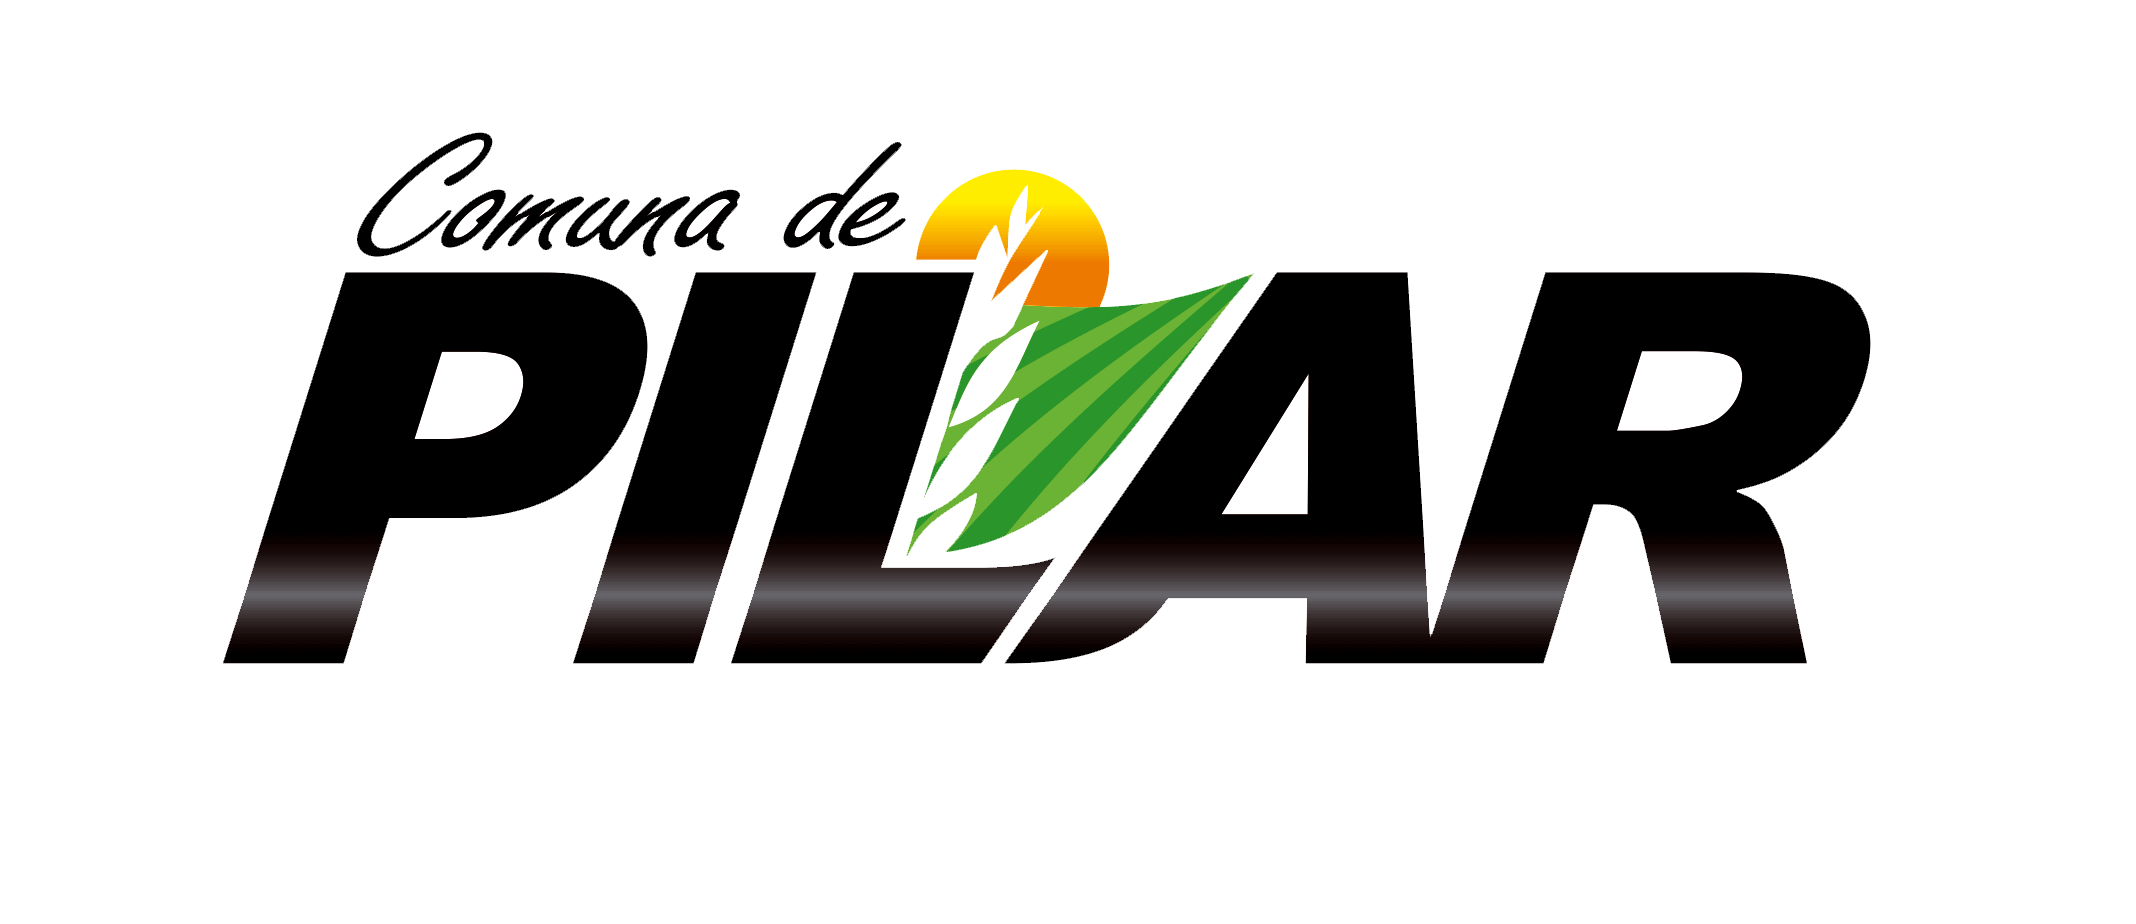 Comuna de Pilar